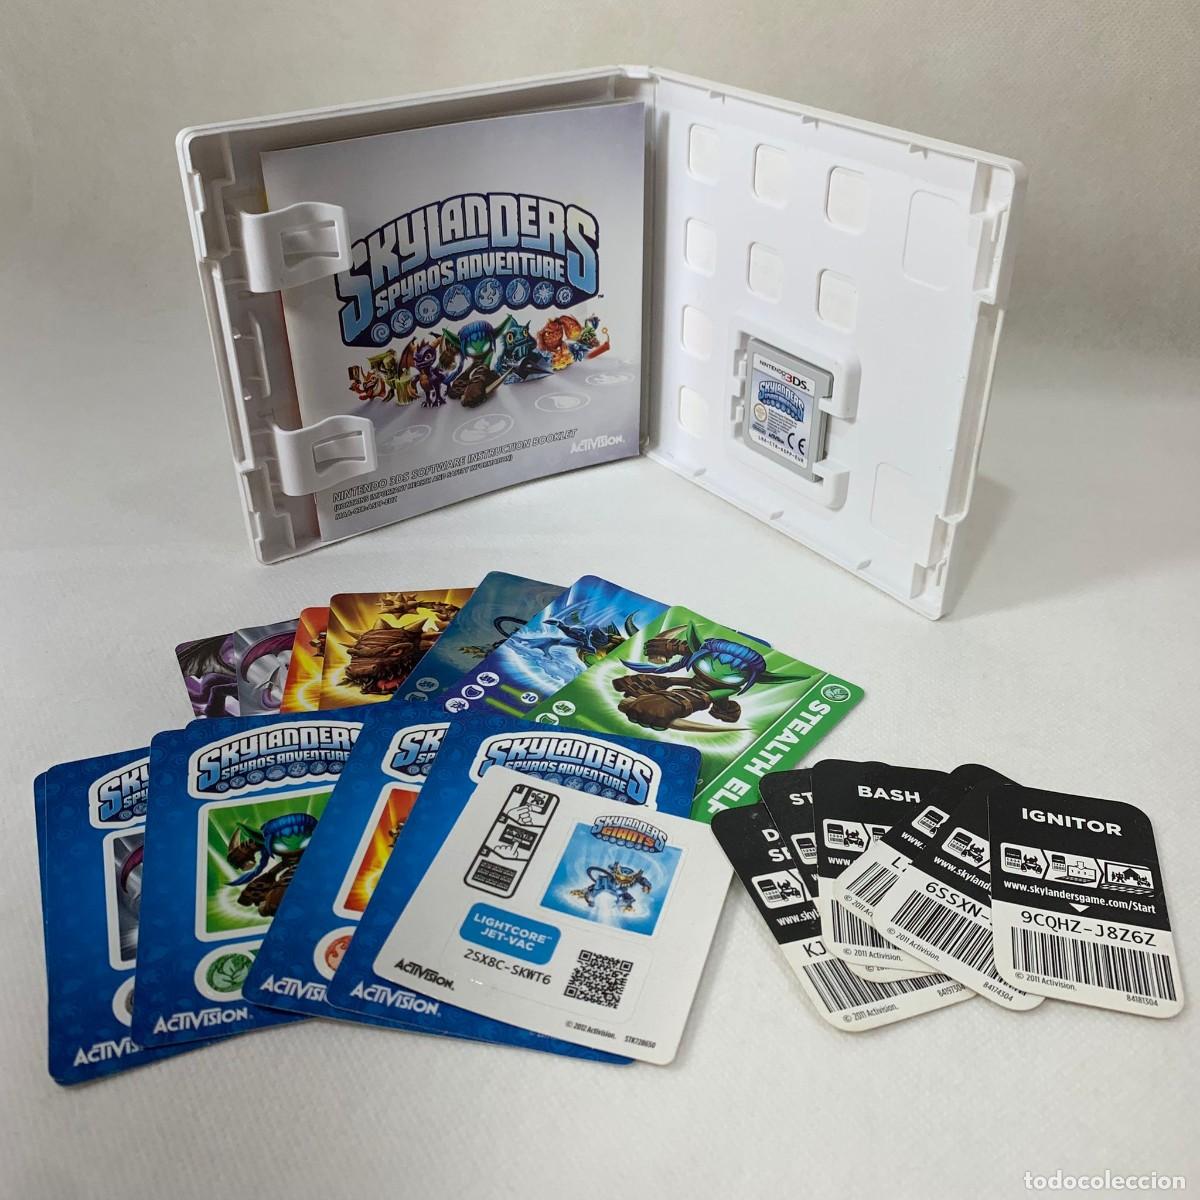 videojuego nintendo 3ds - skylanders spyro's ad - Comprar Videojuegos y Consolas Nintendo 3DS segunda mano todocoleccion - 366222276